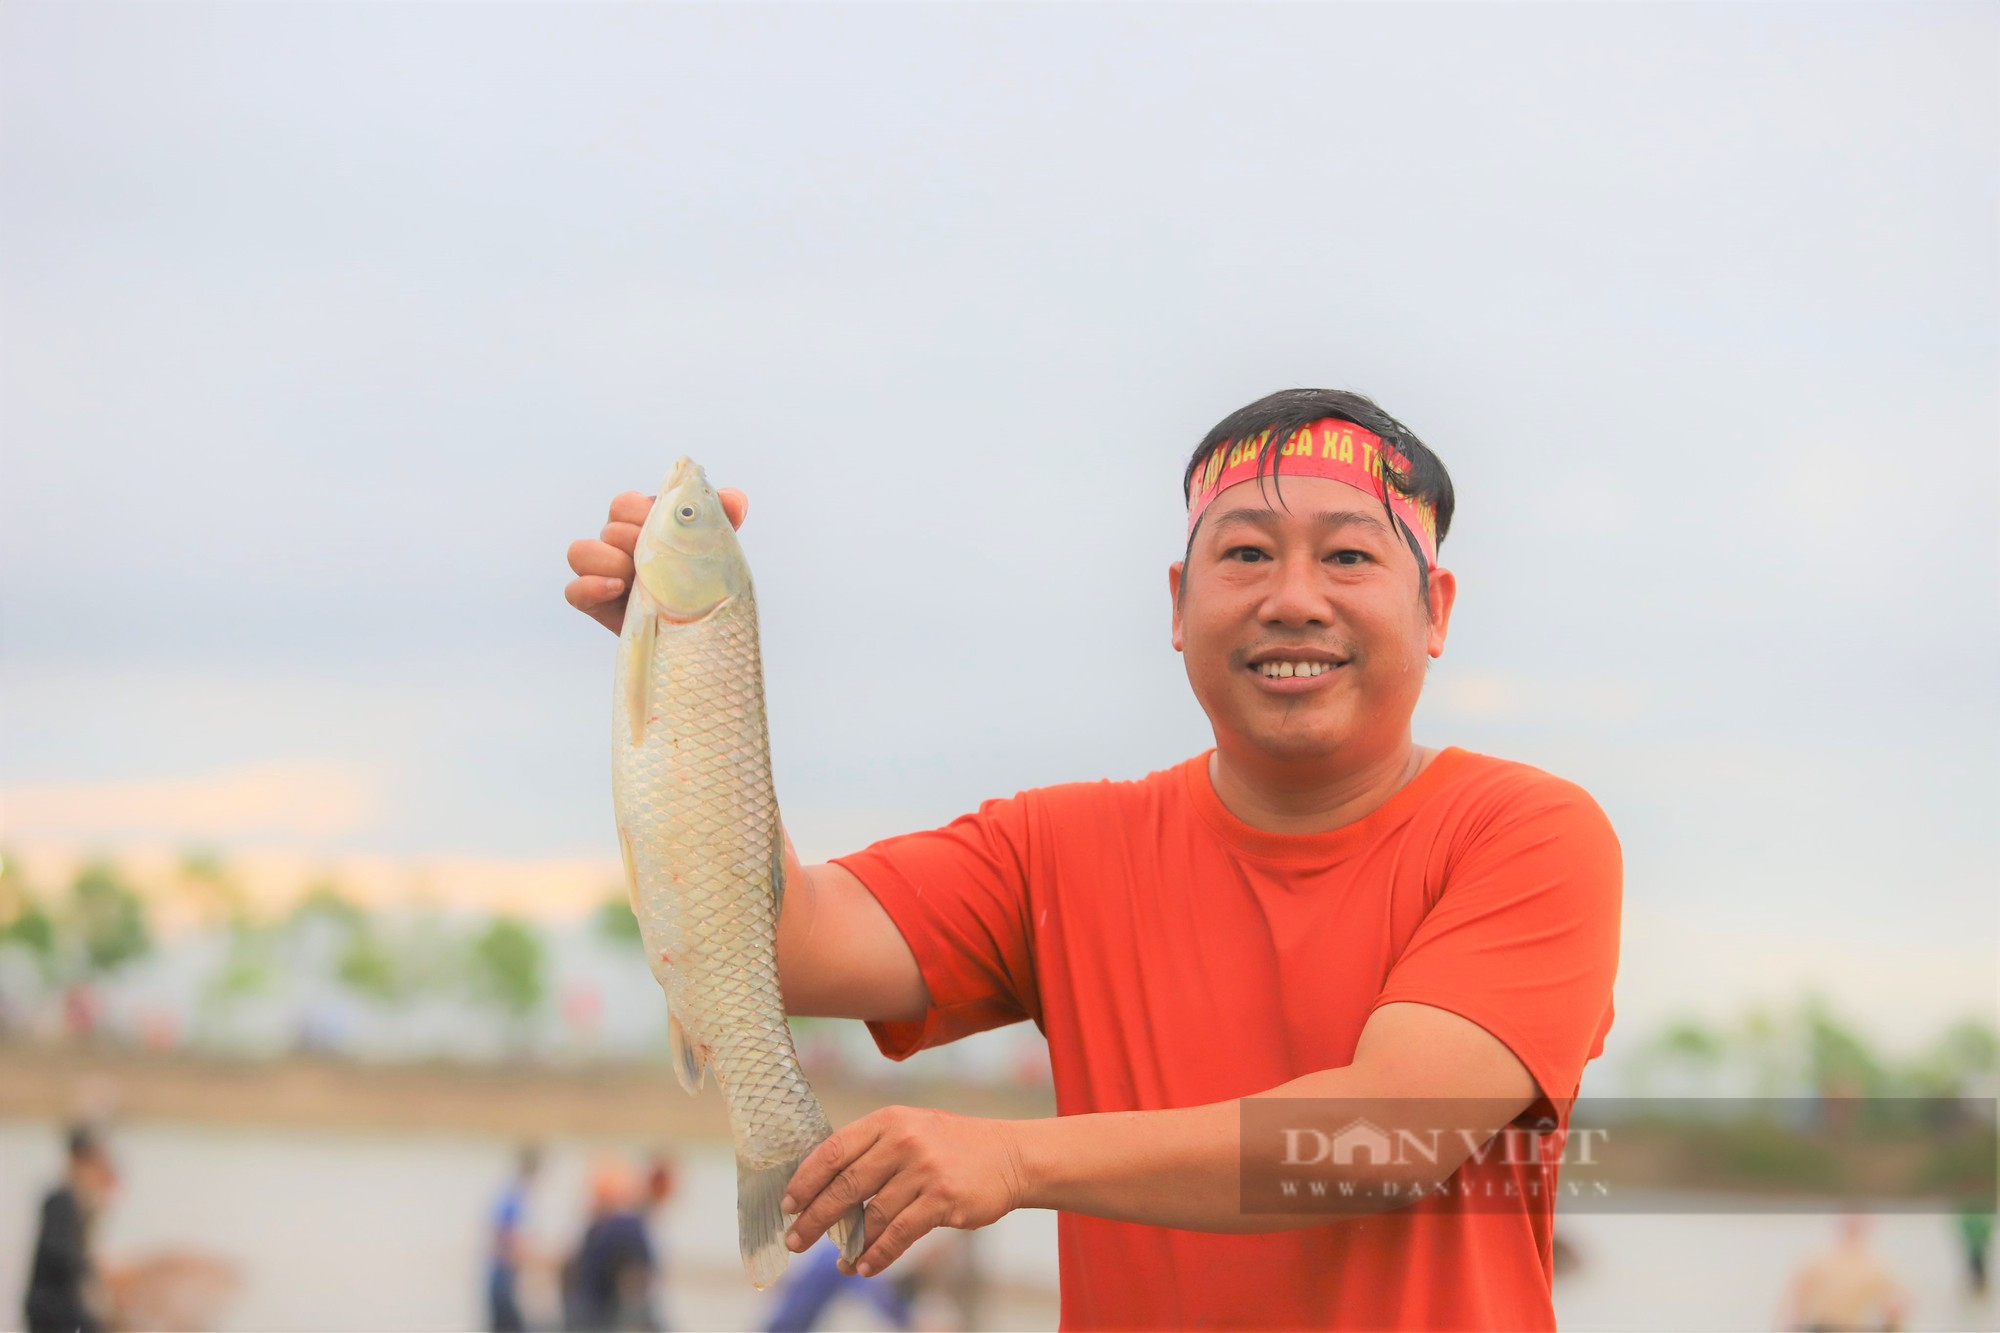 Hà Tĩnh: Hàng nghìn người dân reo hò, lội bùn tham gia Lễ hội bắt cá truyền thống xã Thạch Hưng - Ảnh 10.